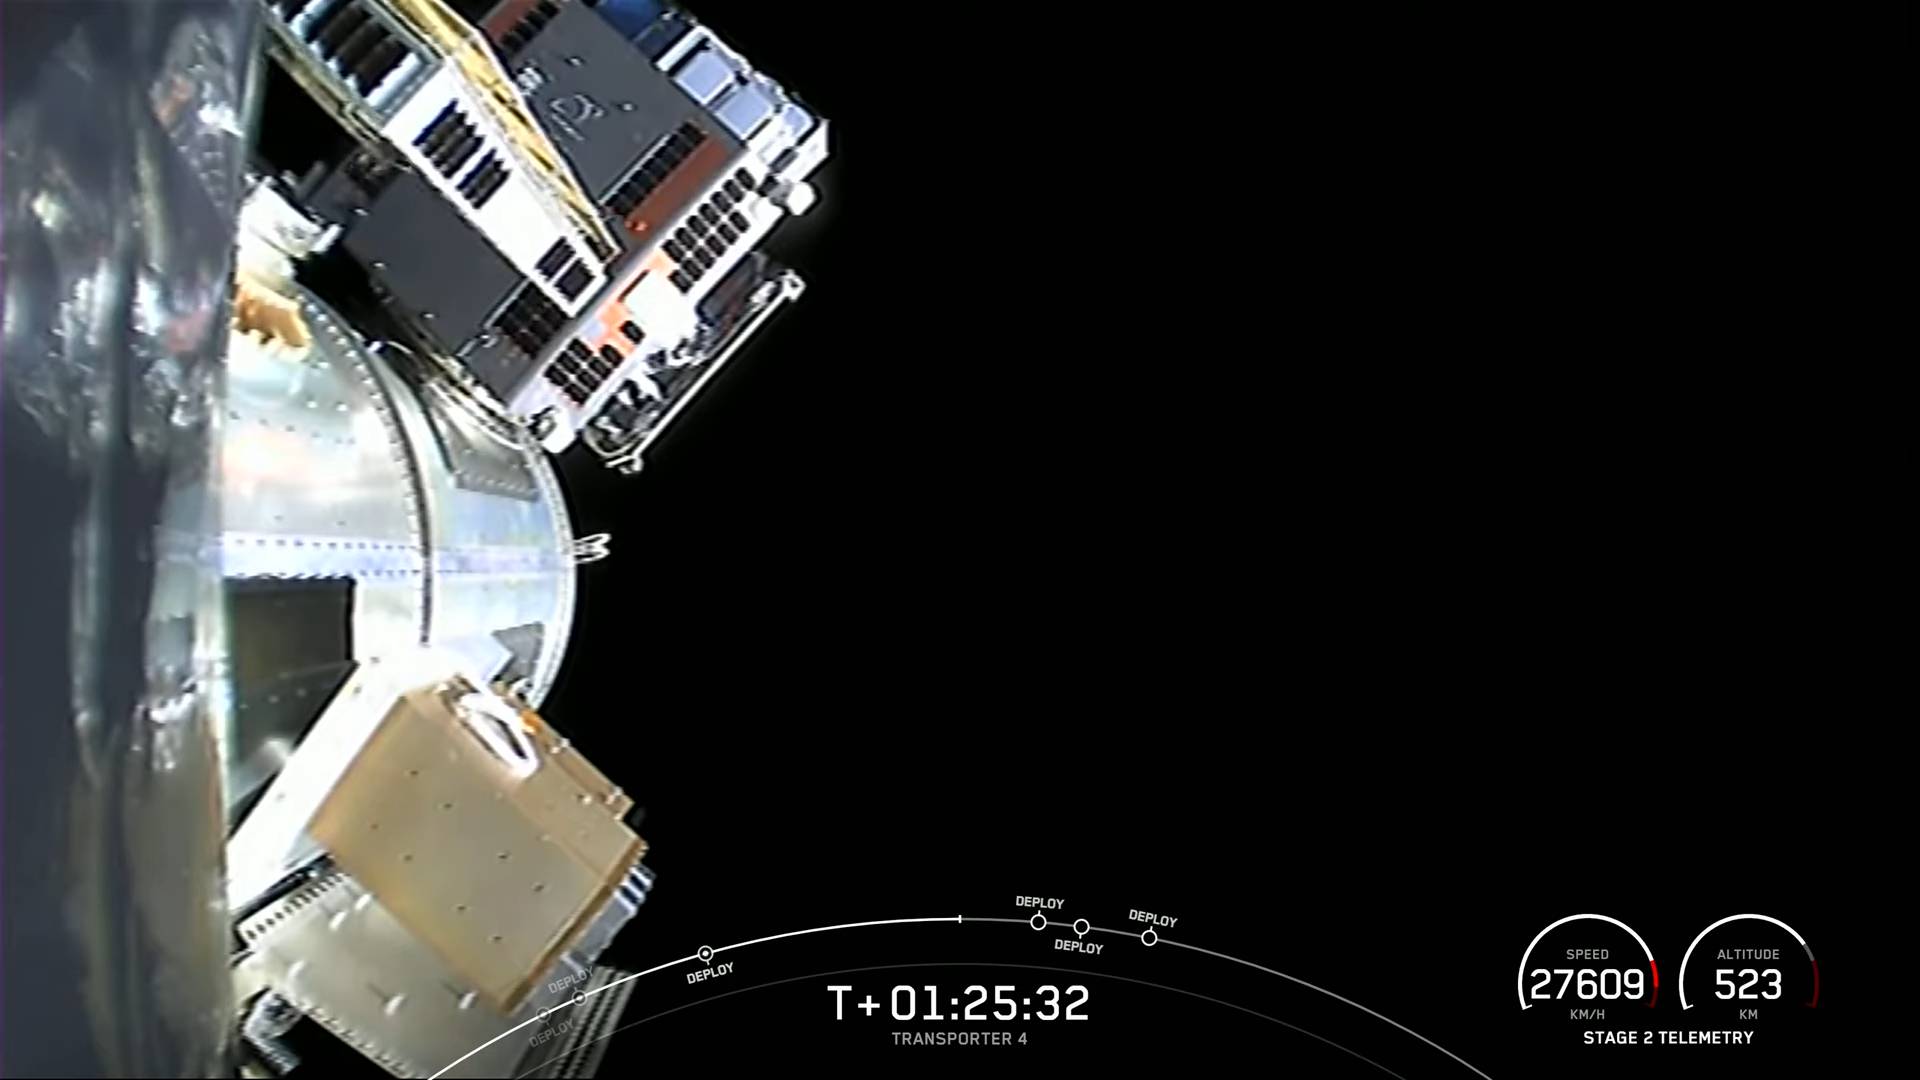 Спутник Lynk Tower 1 (на переднем плане в левом верхнем углу) перед отделением от адаптера и выводом на орбиту